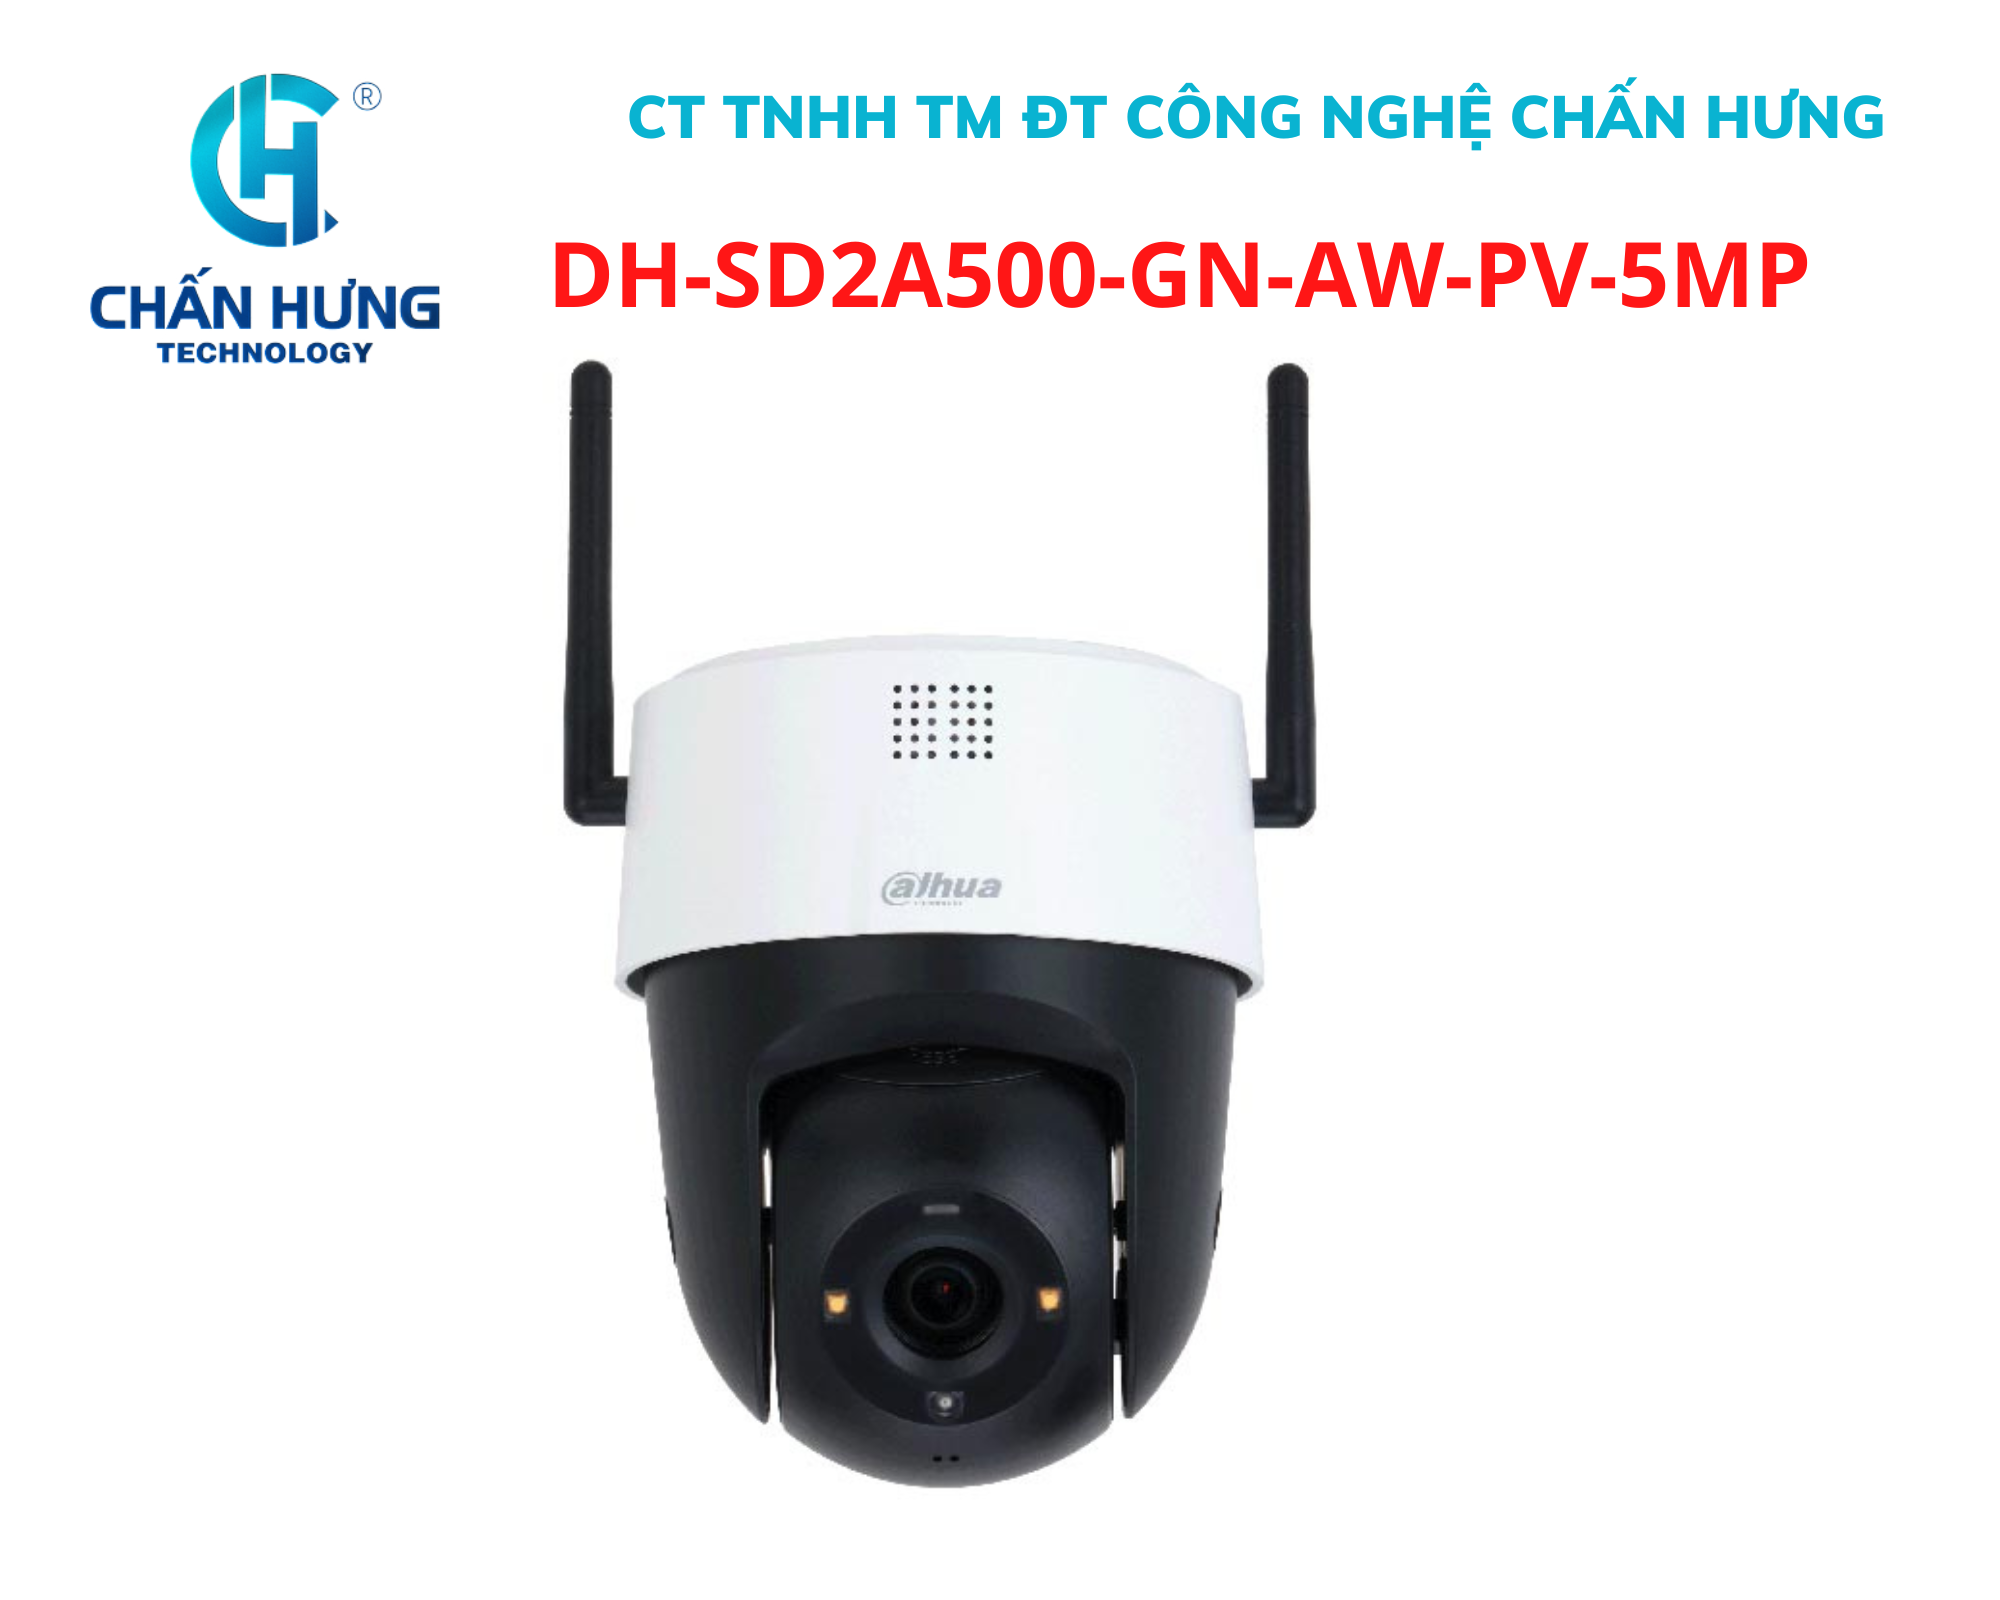 Camera an ninh PTZ wifi Dahua DH-SD2A500-GN-AW-PV 5MP, khe cắm thẻ nhớ 512Gb, đàm thoại 2 chiều - Hàng chính hãng